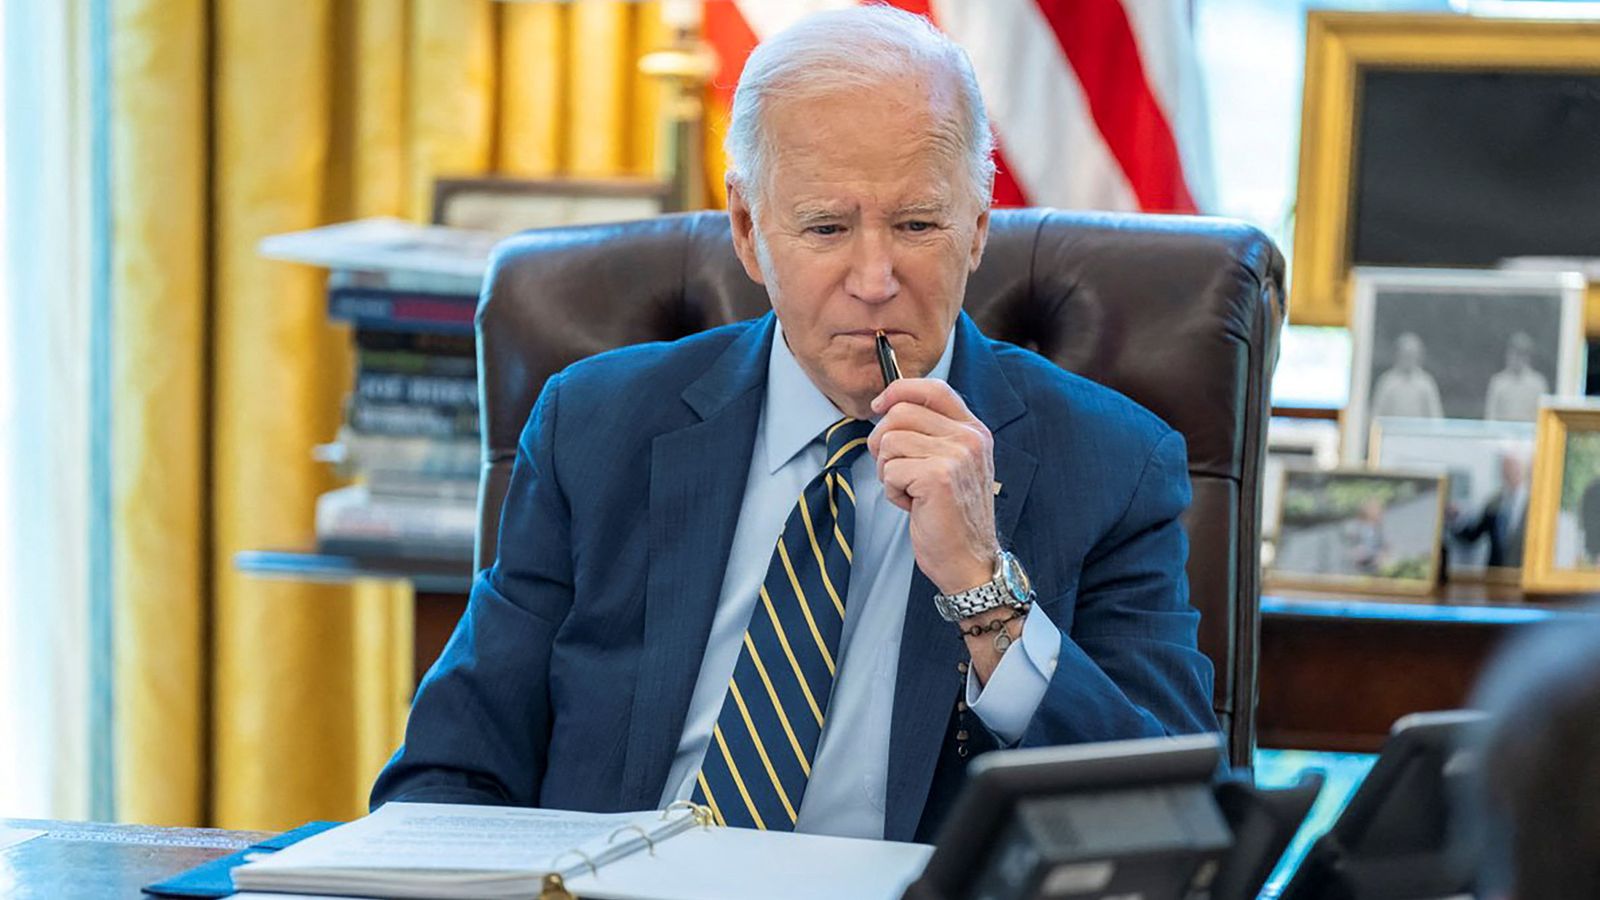 L’attaque israélienne contre l’Iran a un mauvais effet sur Biden après le message public du président à l’intention de Netanyahu |  Actualités américaines